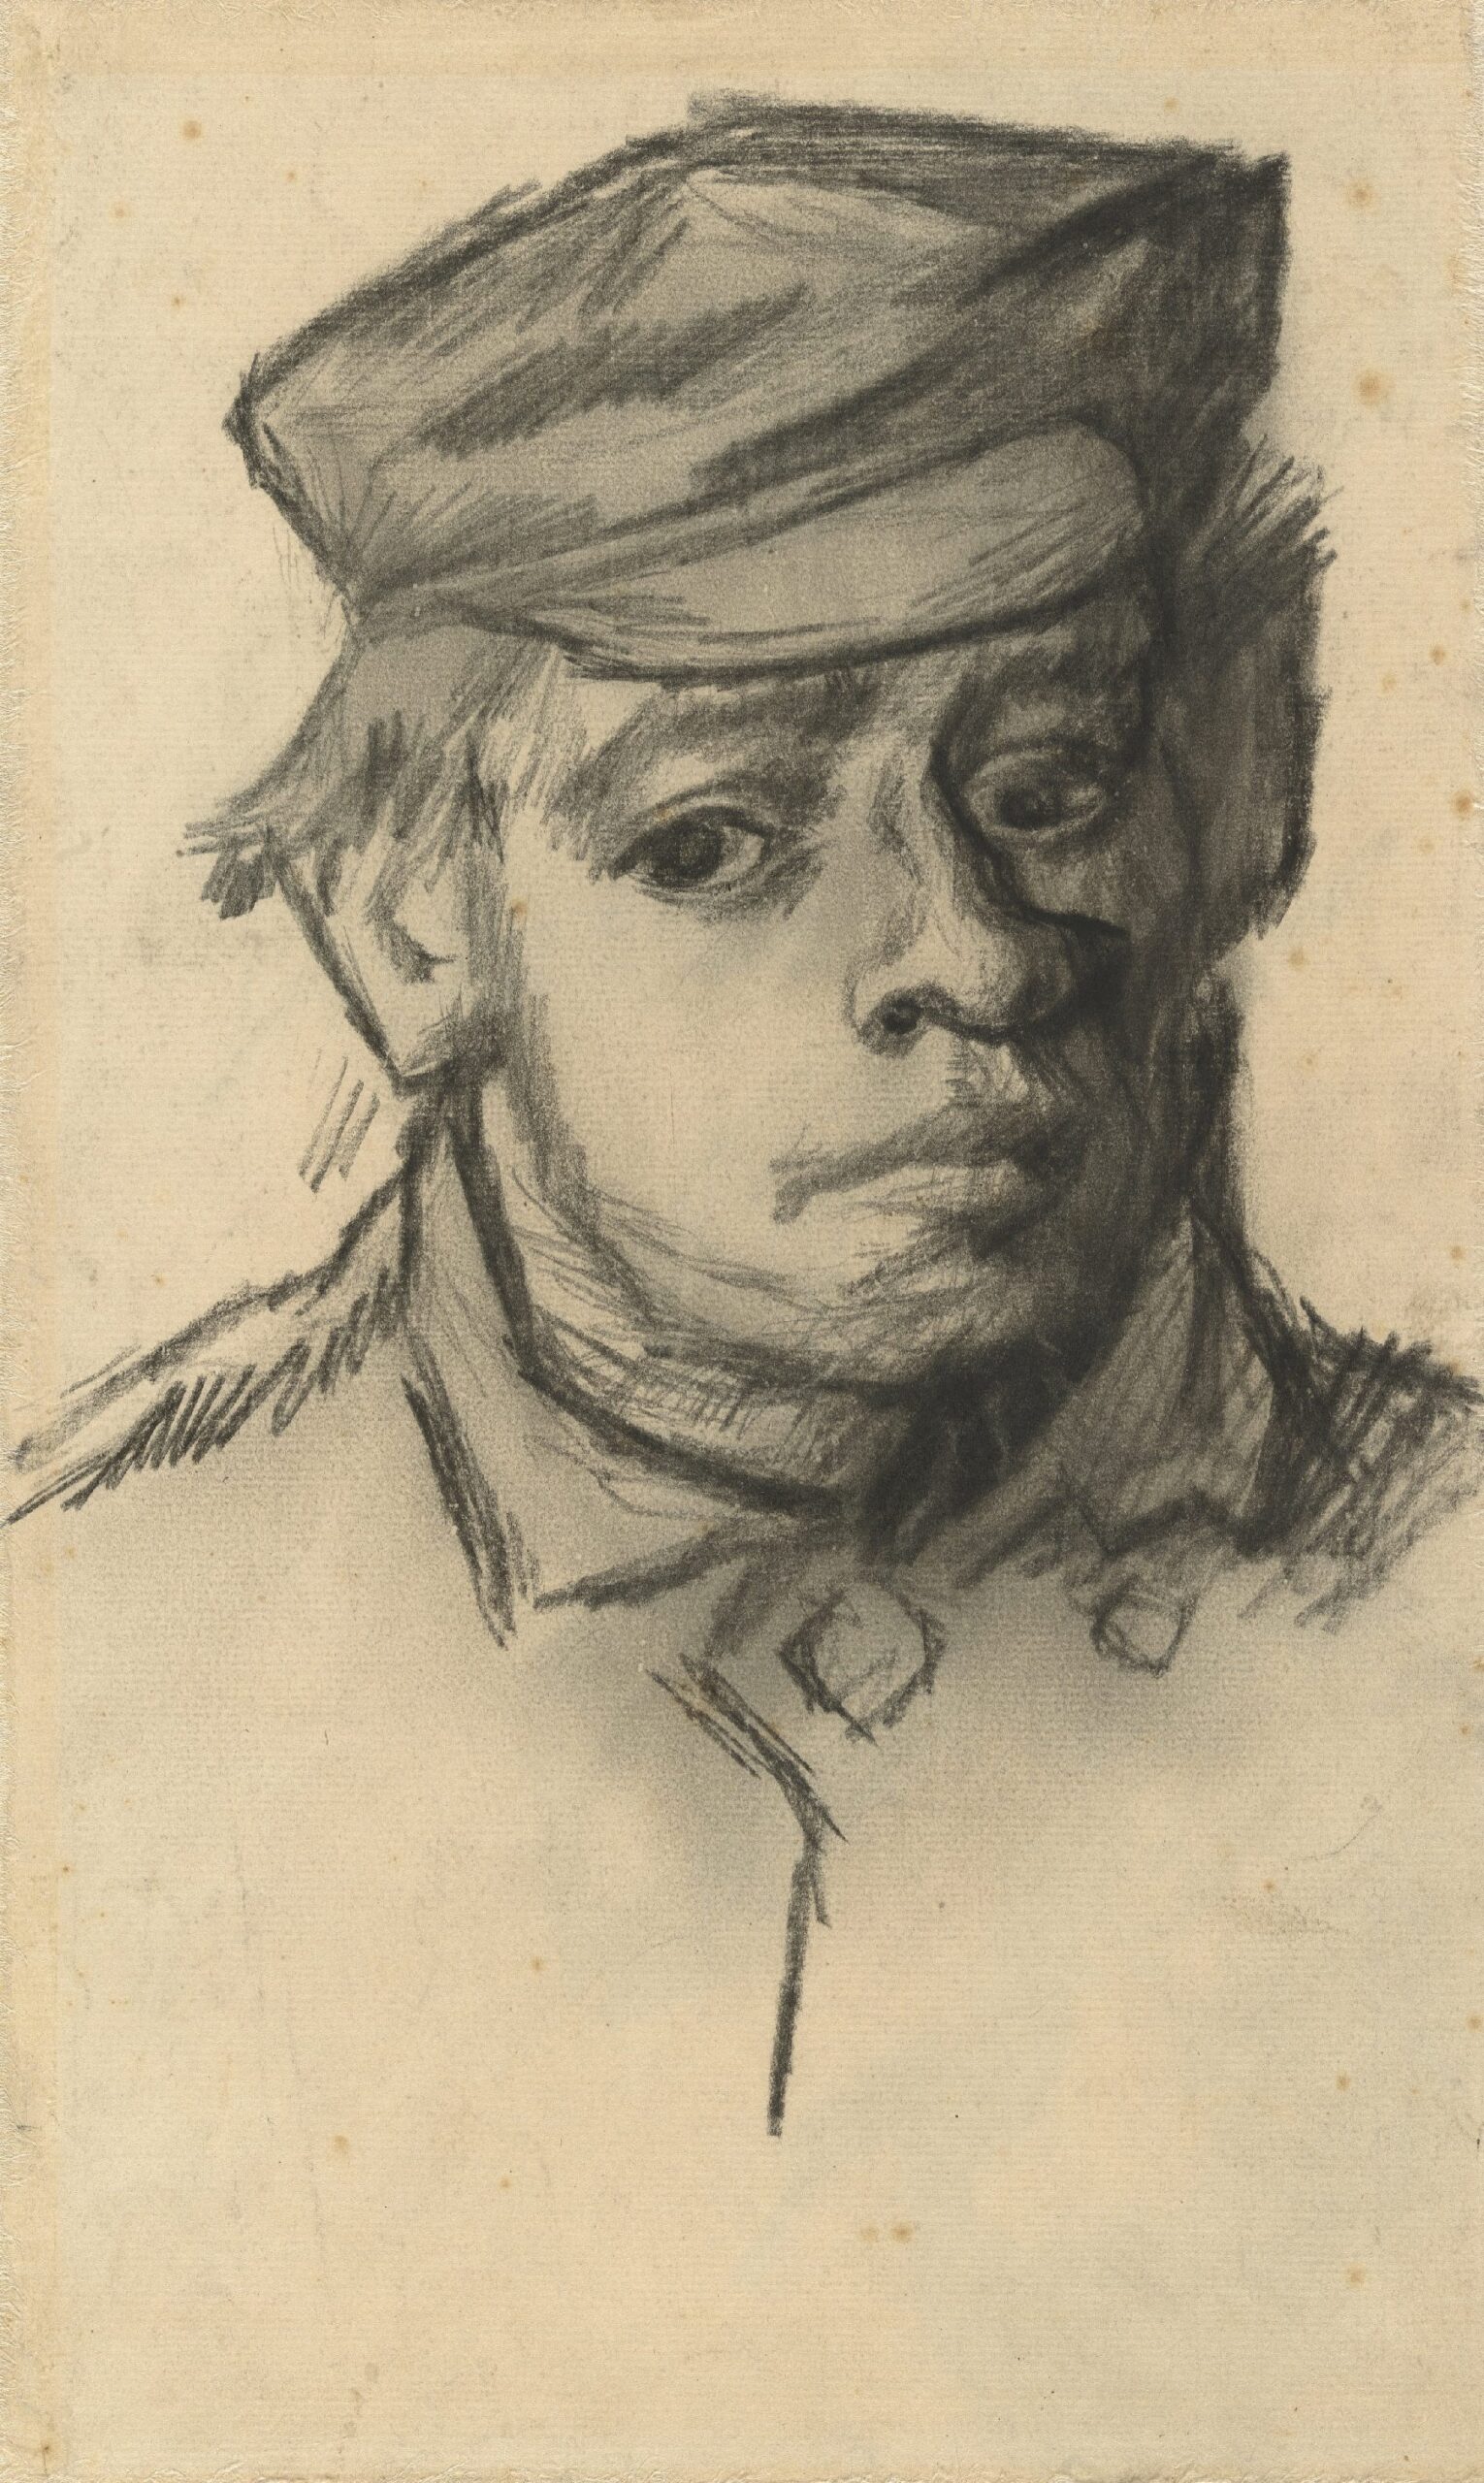 Kop van een jongeman Vincent van Gogh (1853 - 1890), Nuenen, december 1884-mei 1885